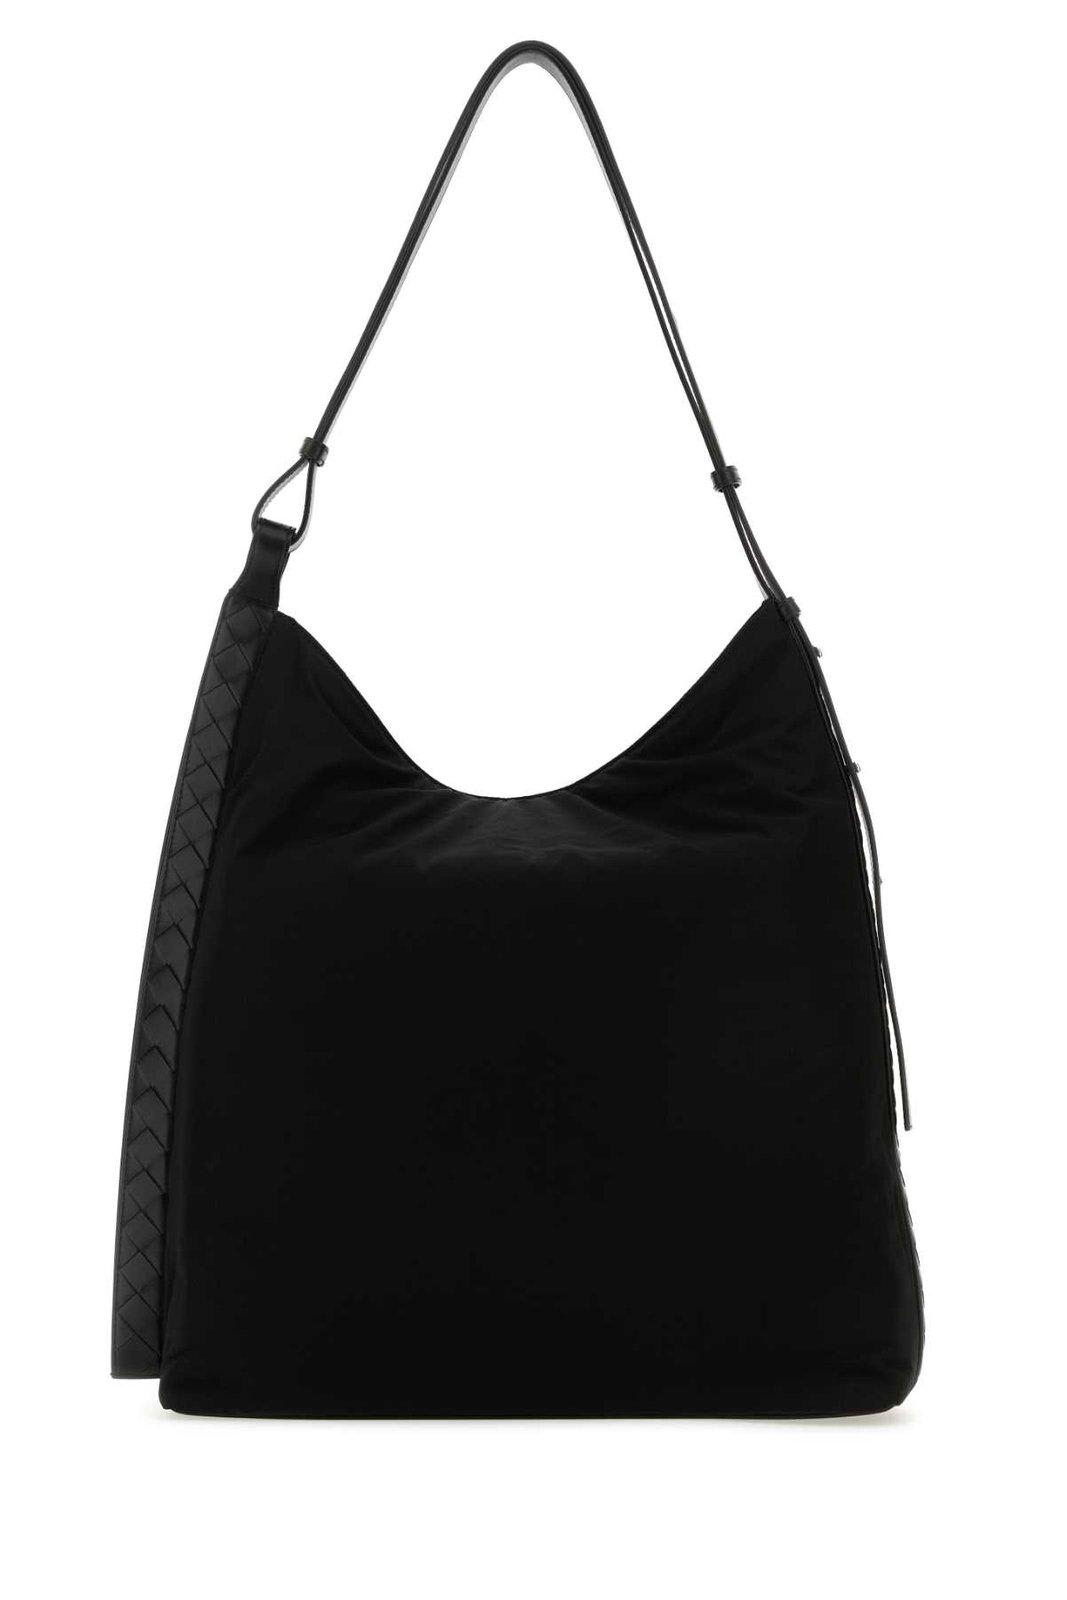 Bottega Veneta Handbags. In Black Silver